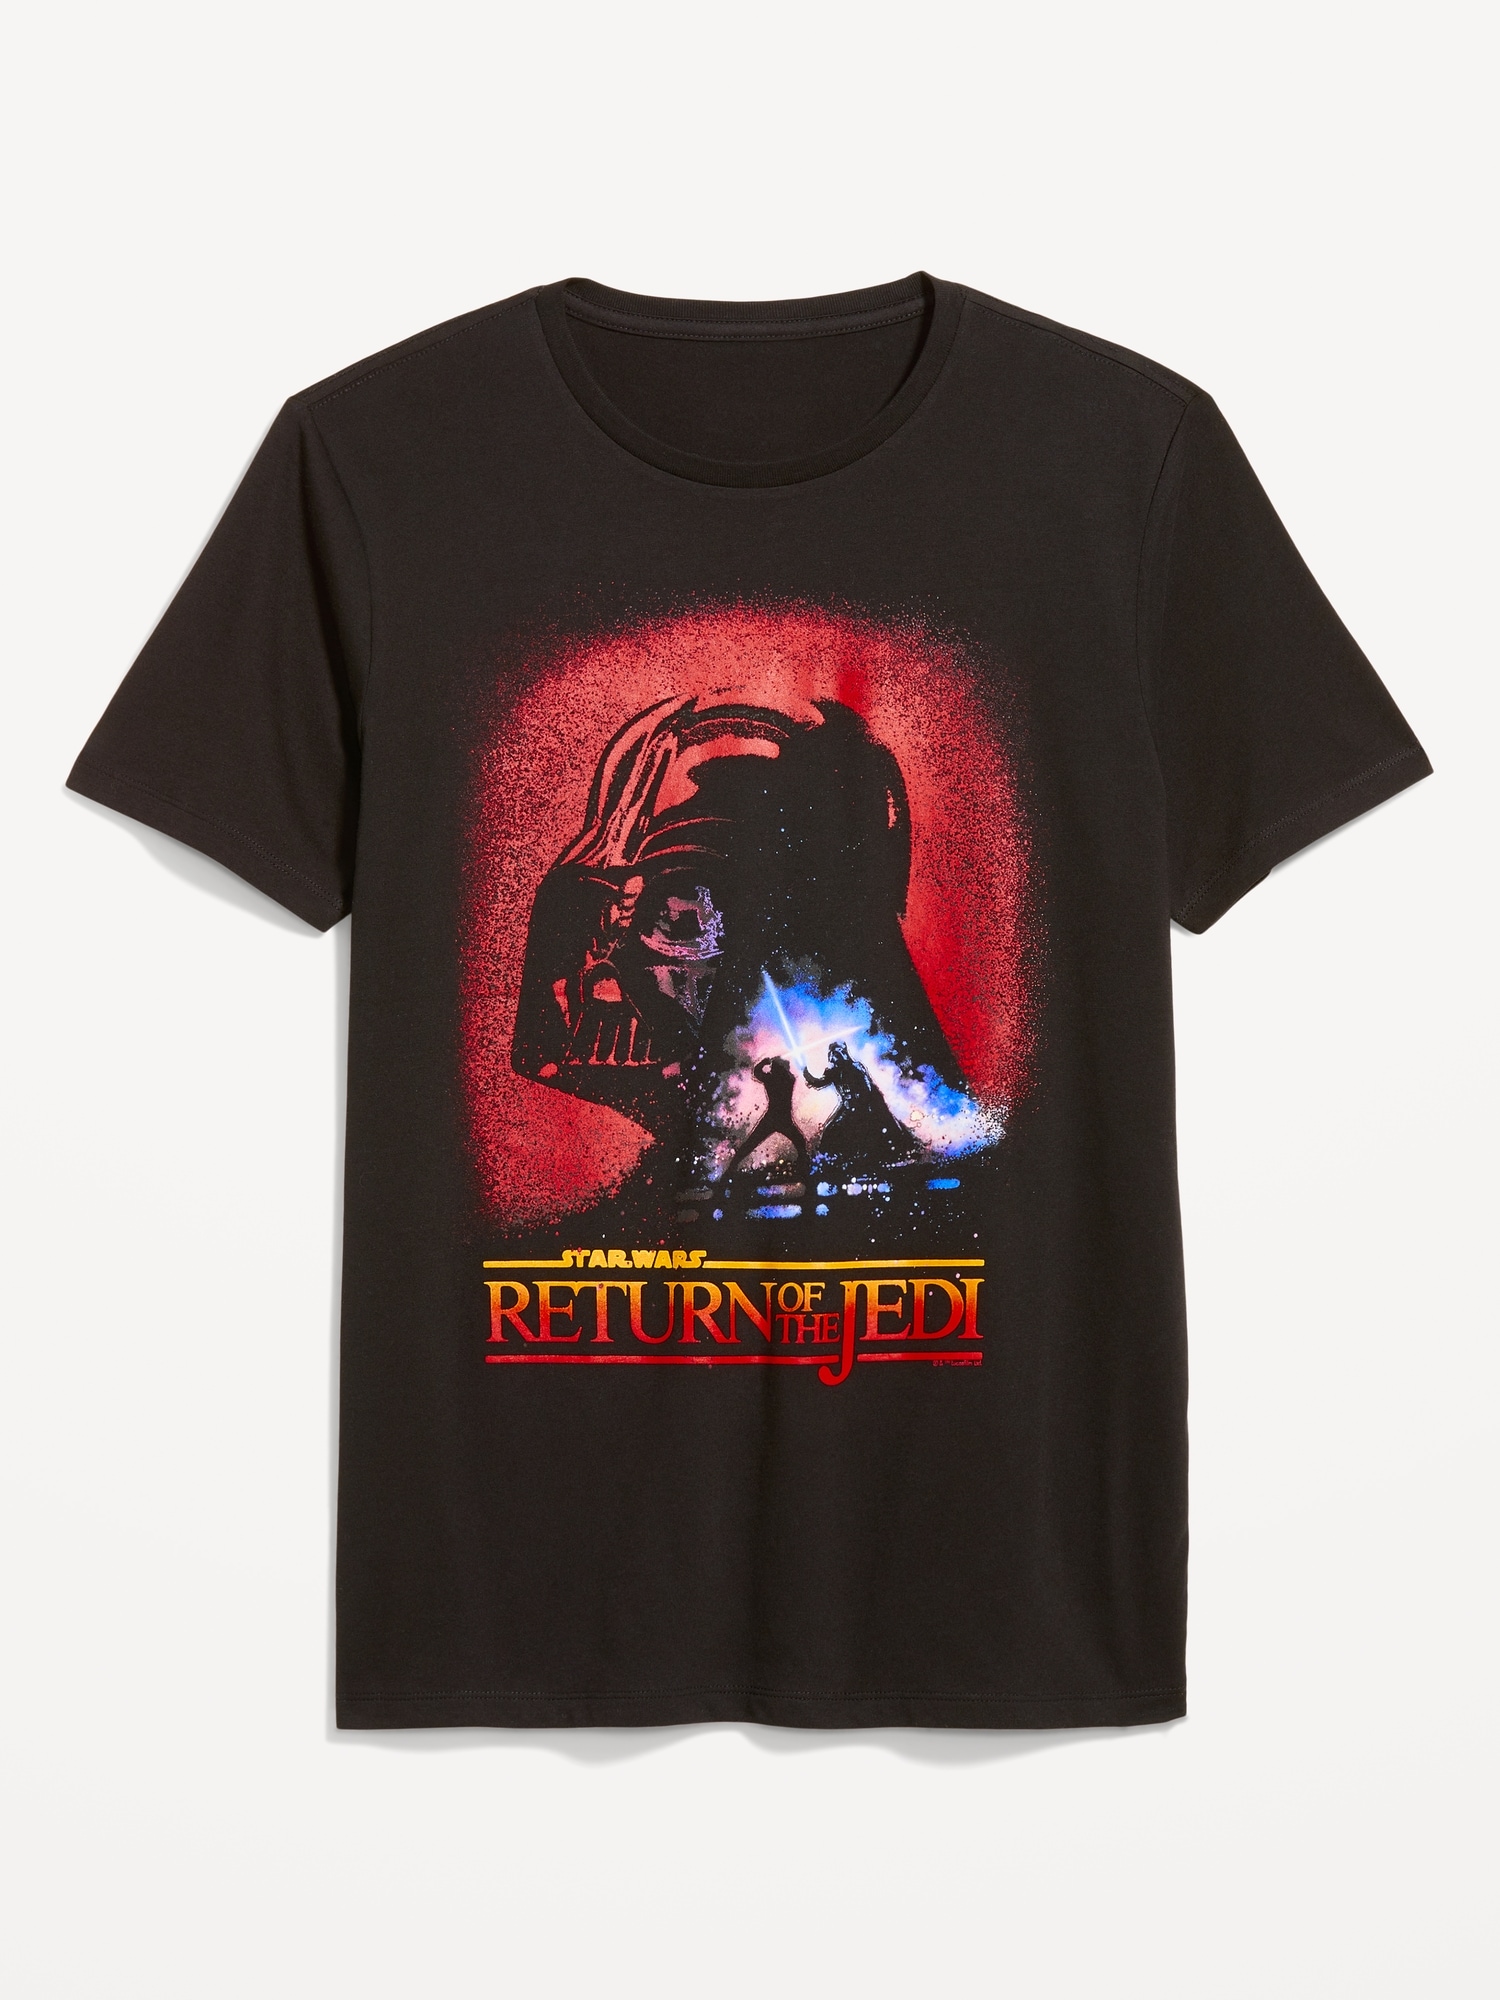 Star Wars™ "Return of the Jedi" T-Shirt